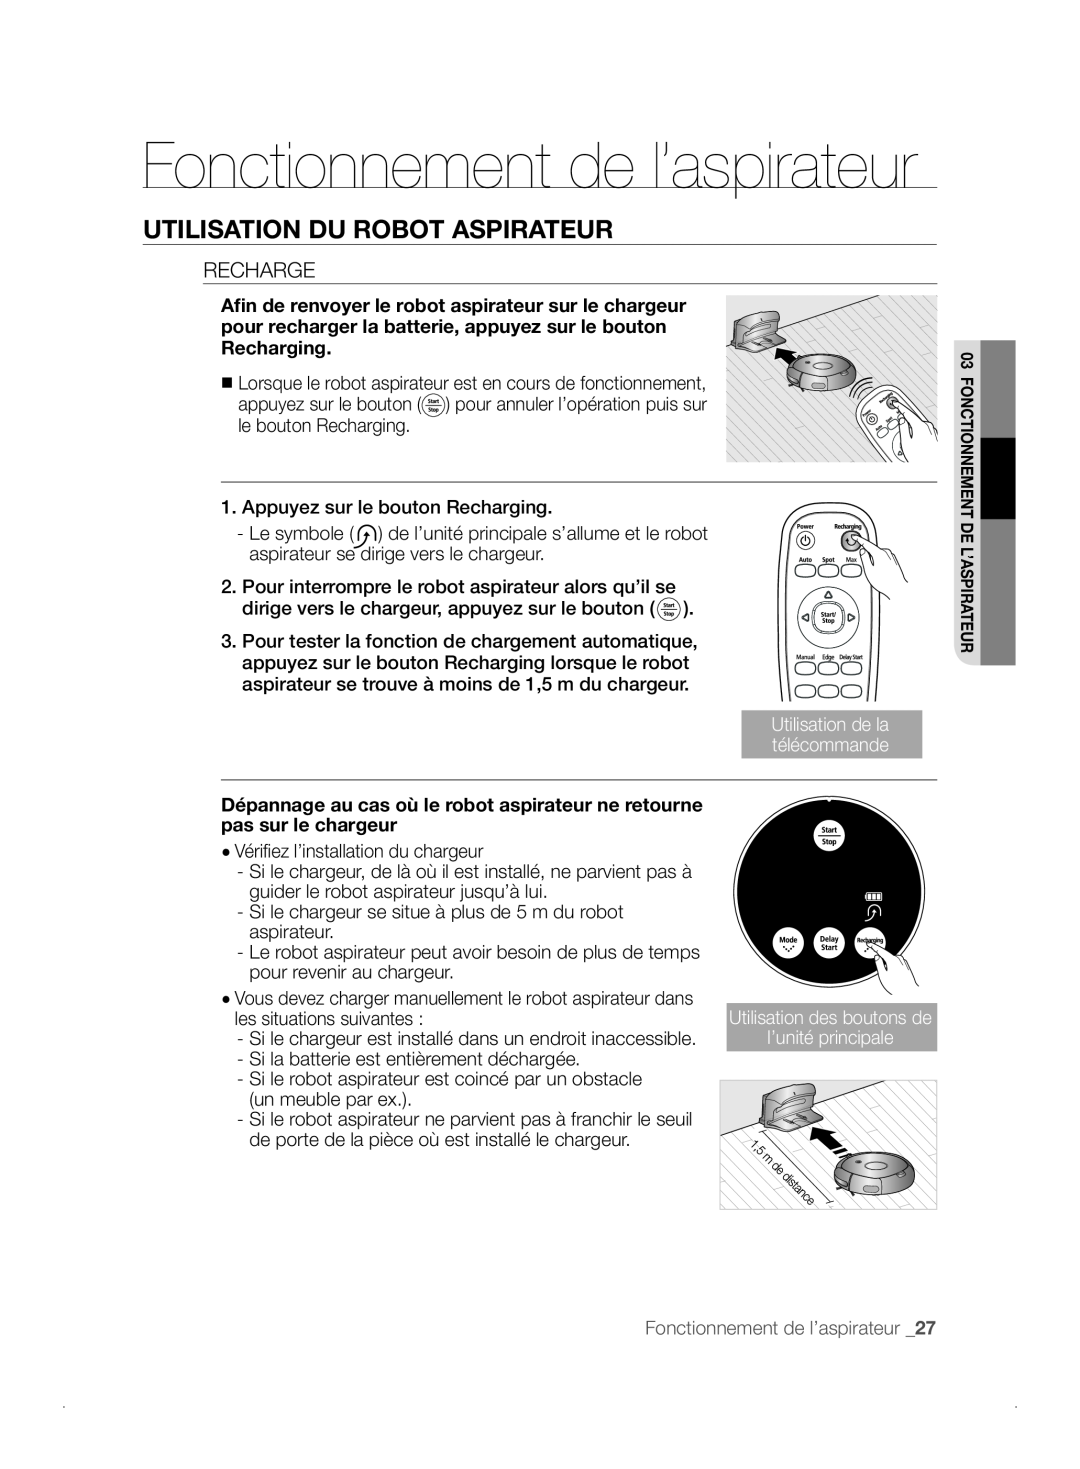 Samsung VCR8841T3B/XEF manual Fonctionnement de l’aspirateur, Utilisation Du Robot Aspirateur, Recharge 